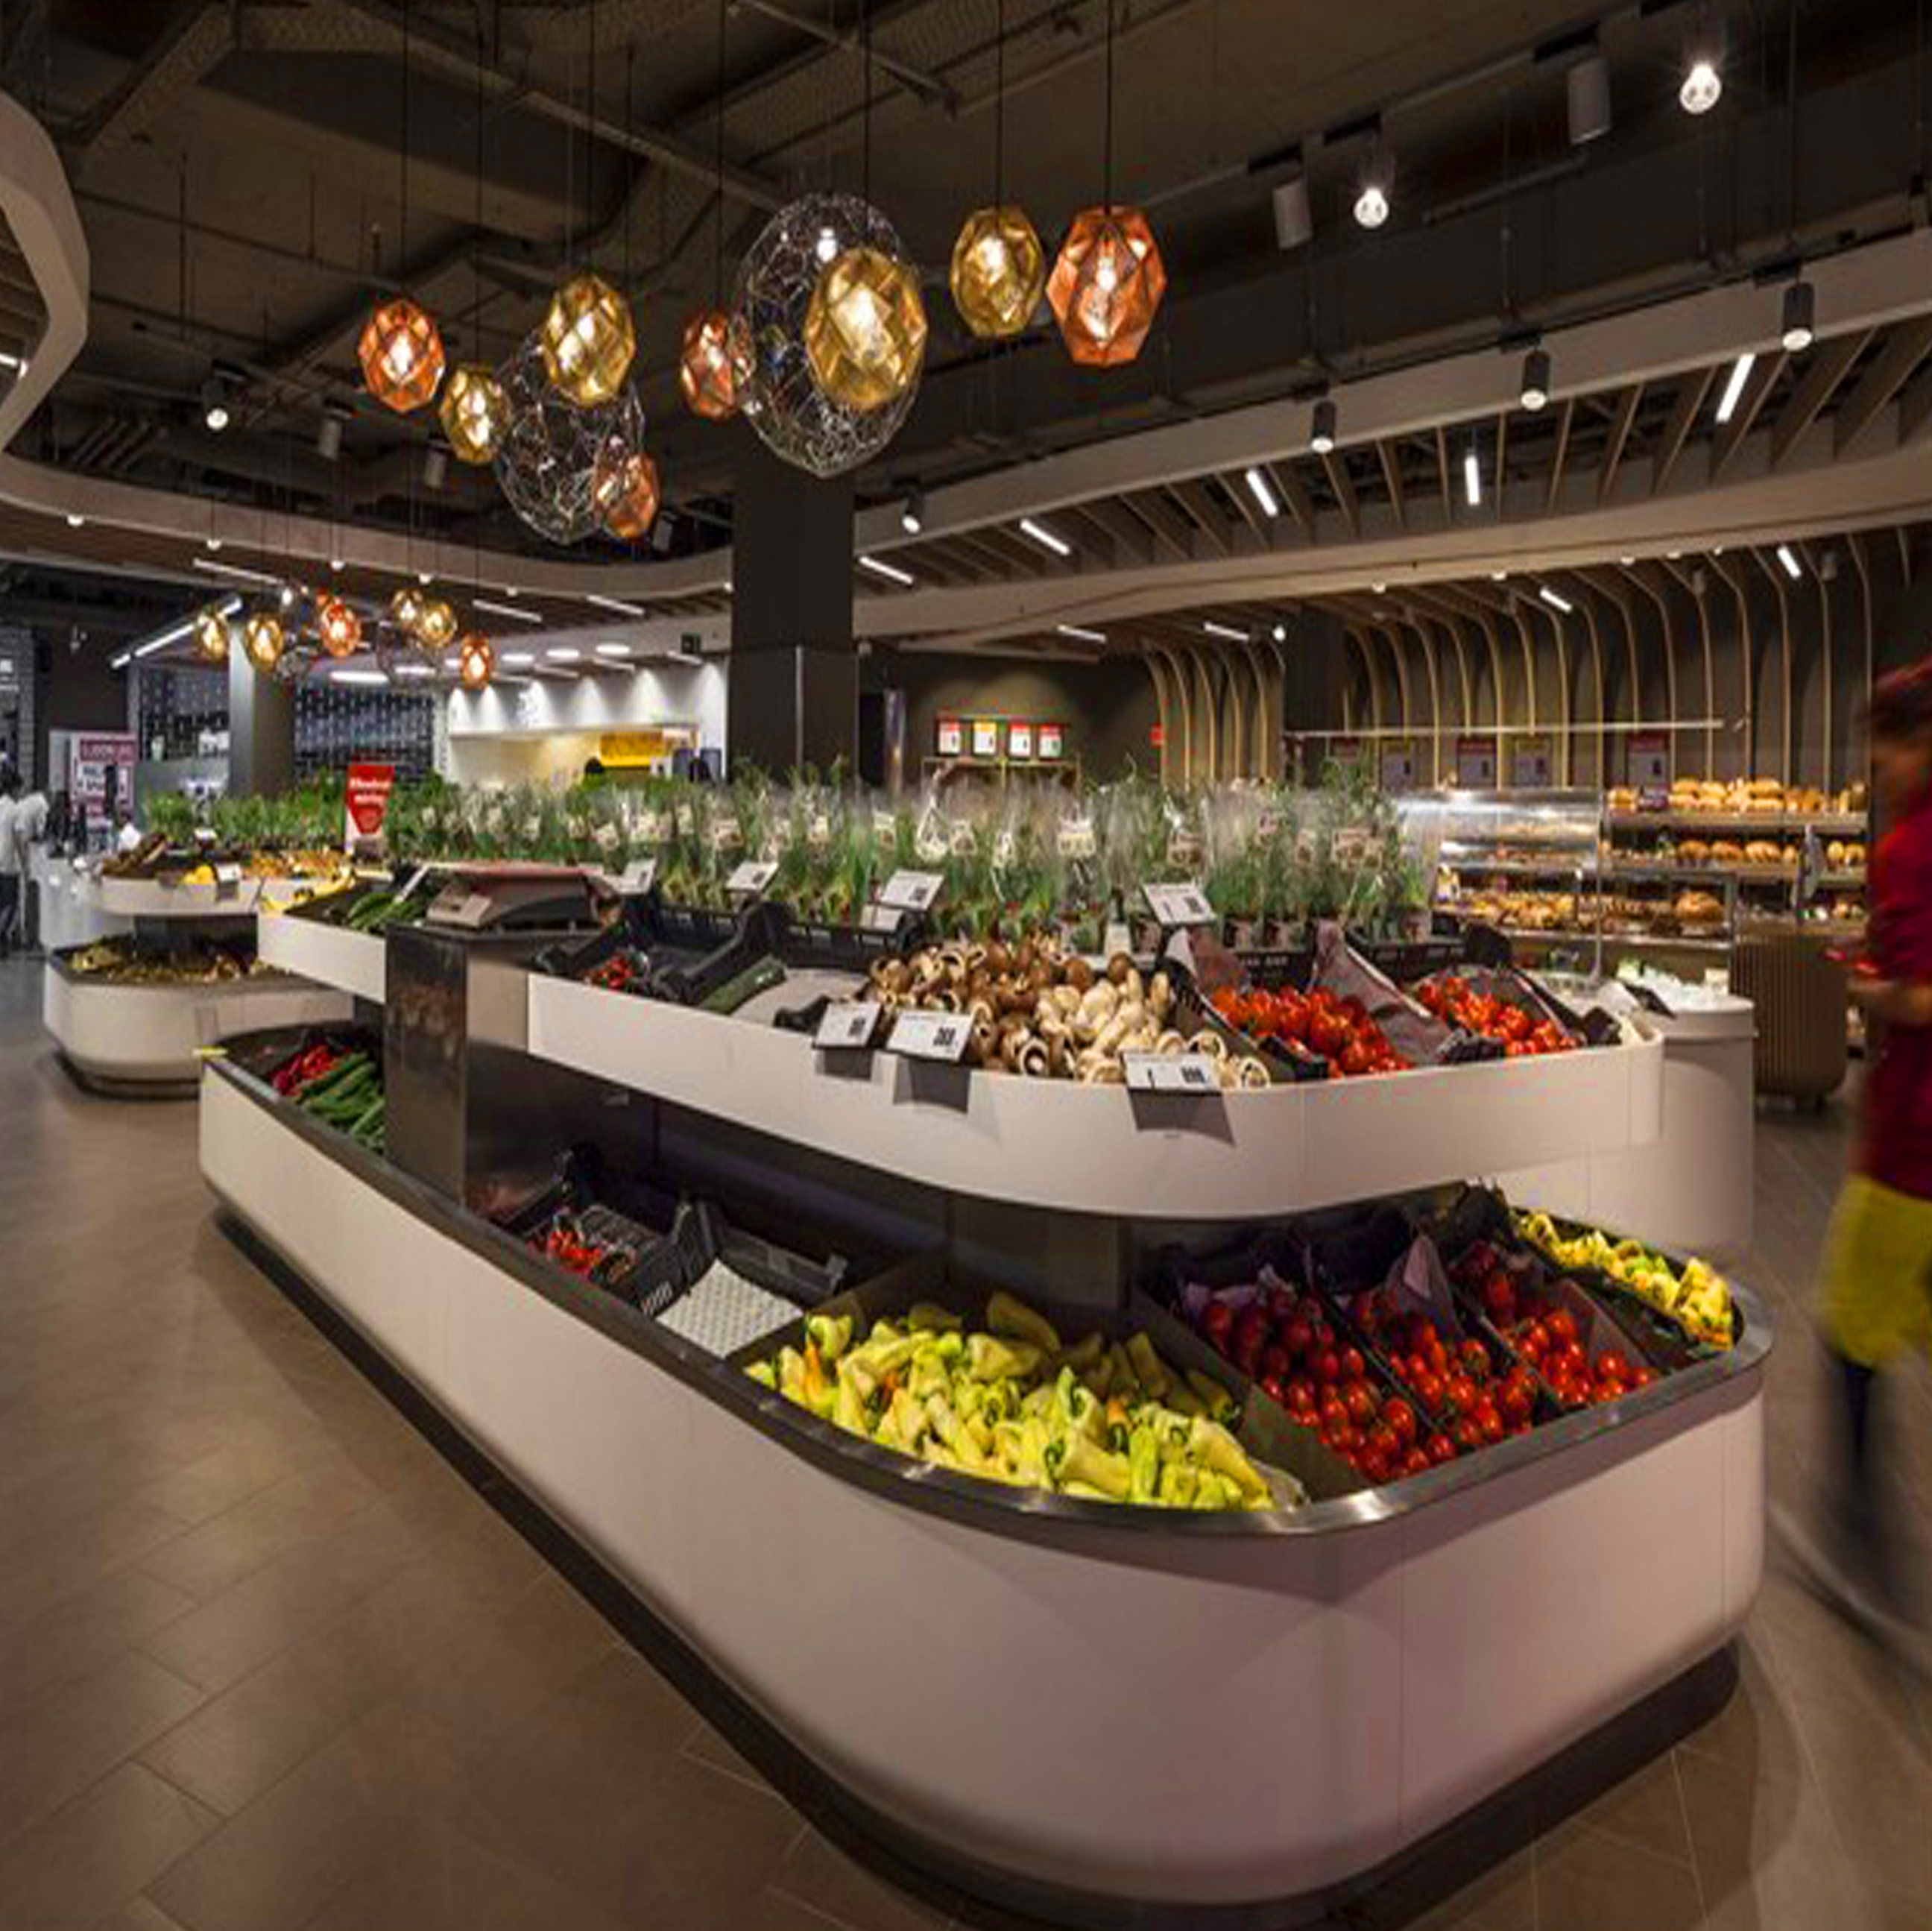 超市设计水果店杂货店小型超市卖场生活馆菜市场实景照片效果图